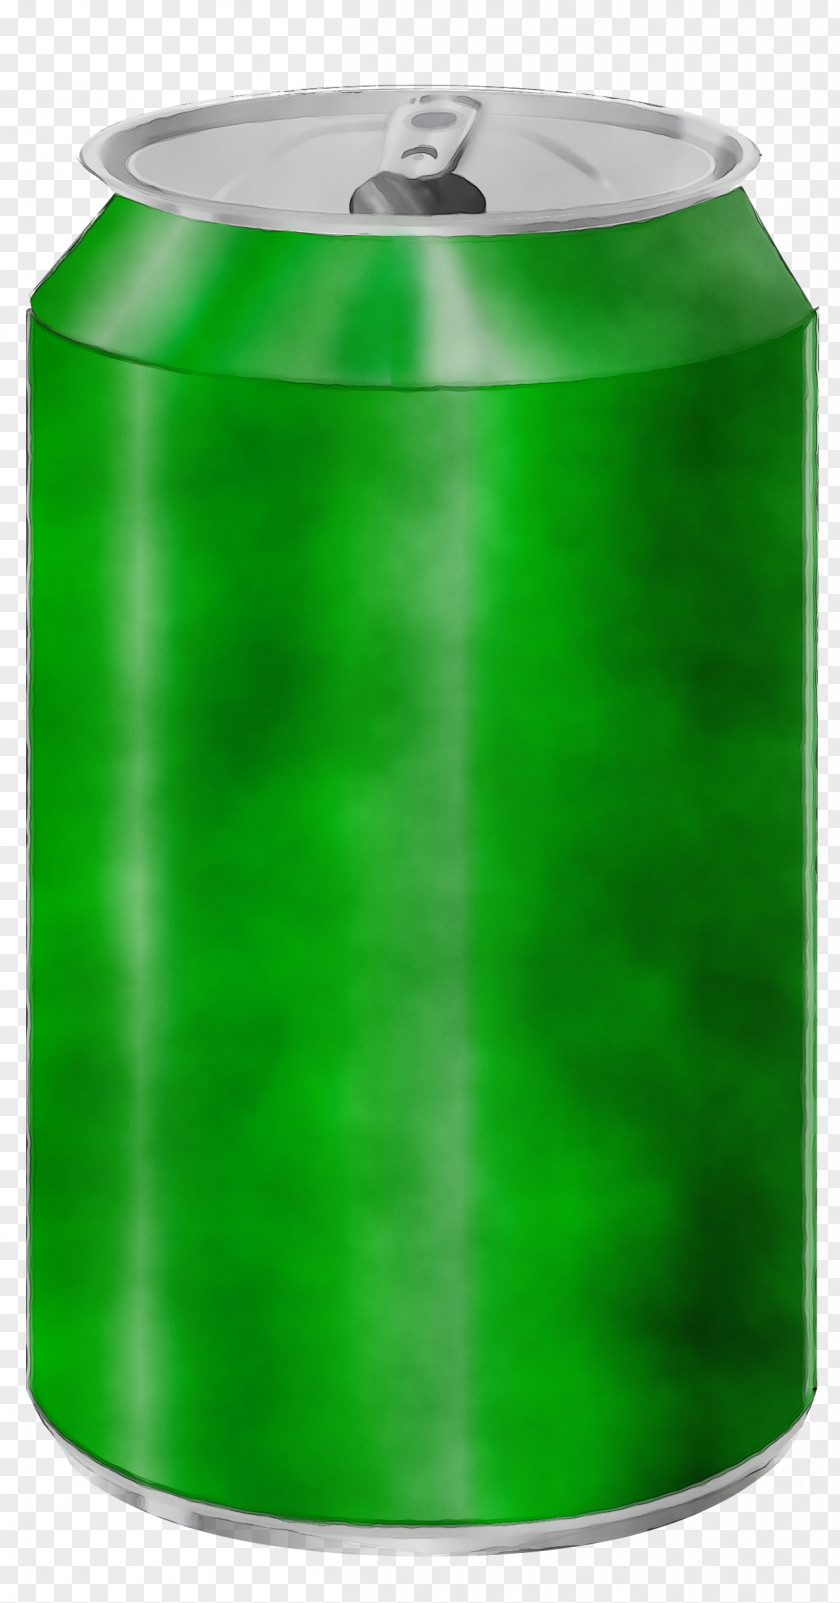 Plastic Water Bottle Green Beverage Can Rain Barrel Cylinder PNG